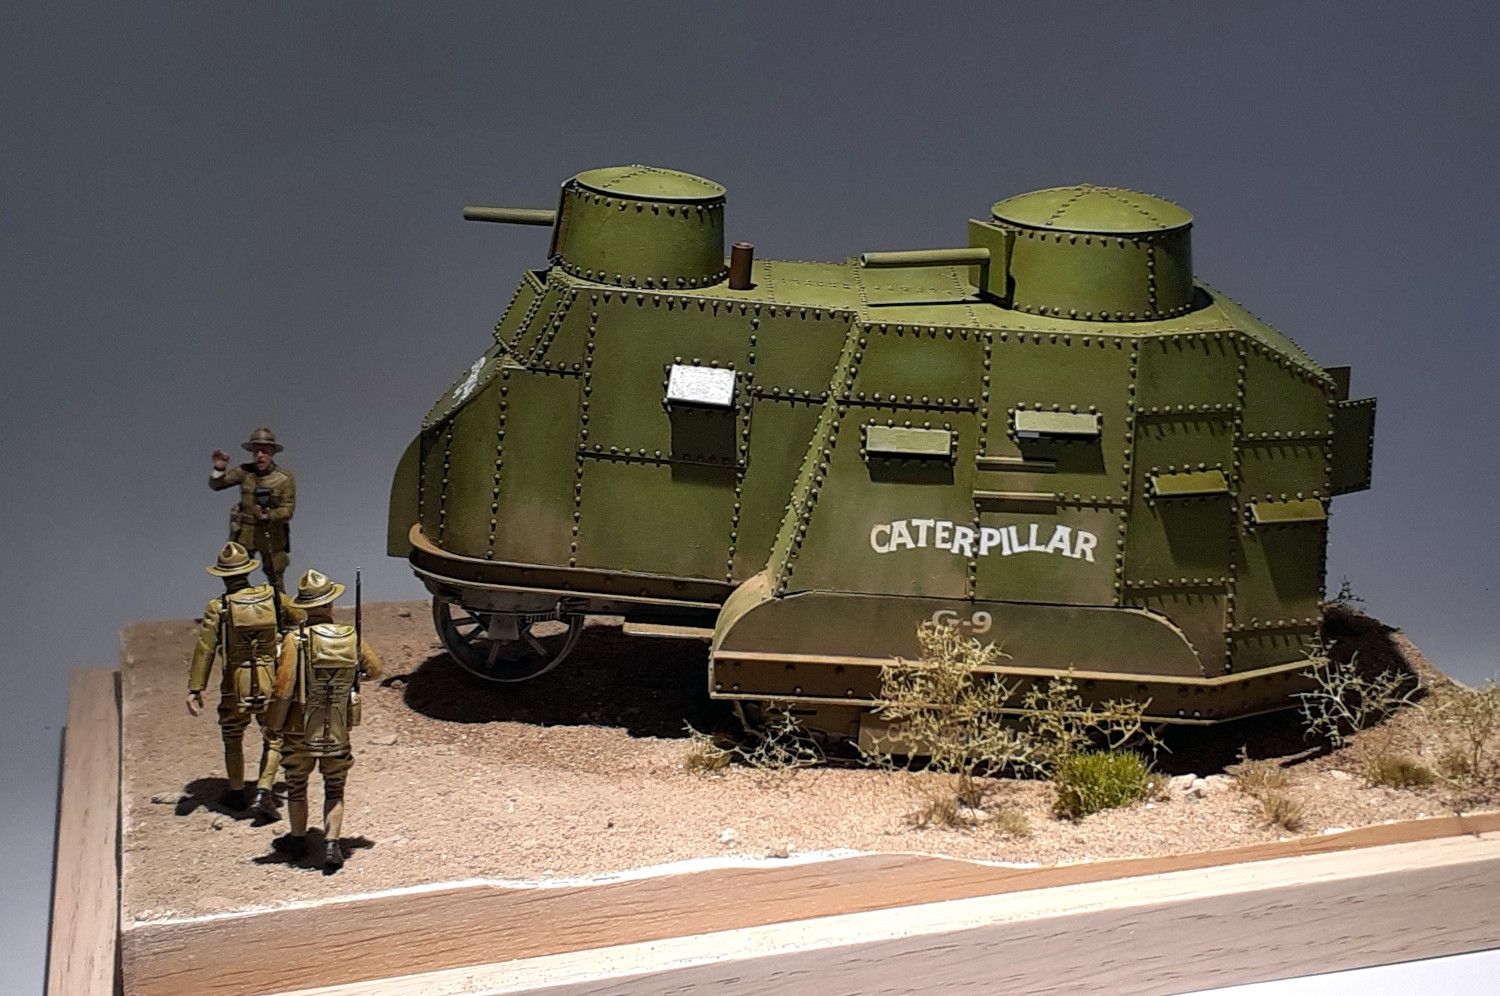 Caterpillar G9 : 1er tank US de l'Histoire [base tracteur Holt Roden + scratch] de Lostiznaos 6640ffdf5e700